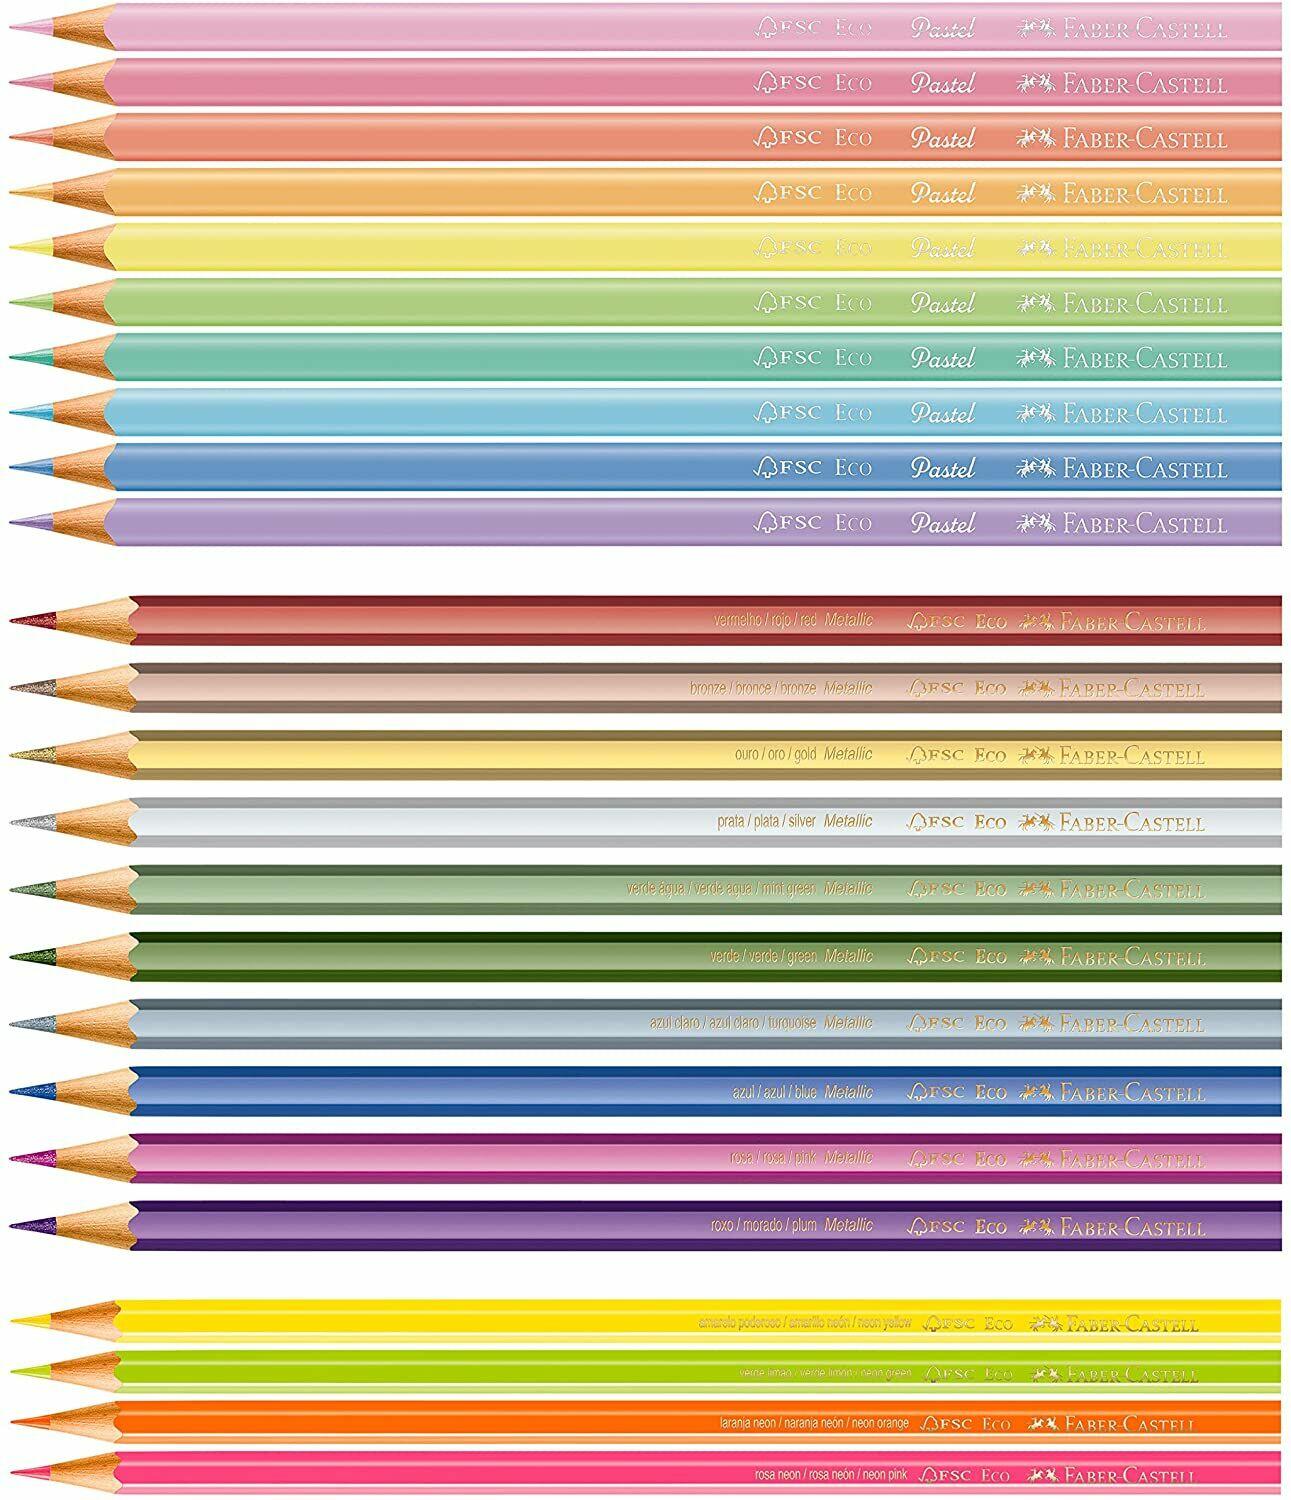 Comprar Kit Lápis de Cor Pastel + Neon + Metálico 24 Cores - Bazar